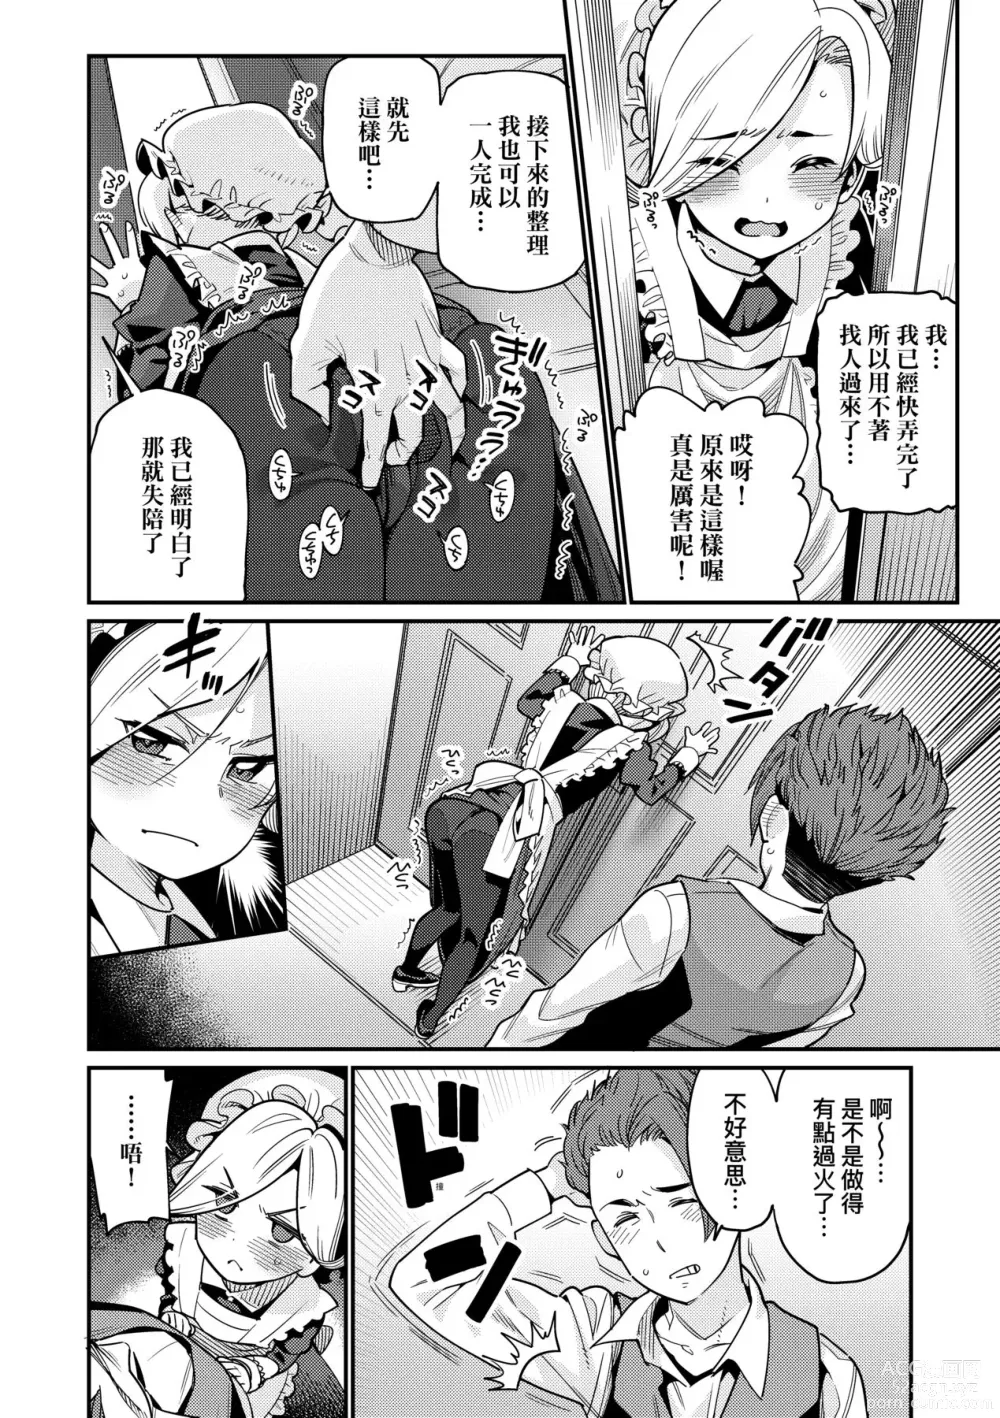 Page 15 of manga Itoshiki Wagaya (decensored)